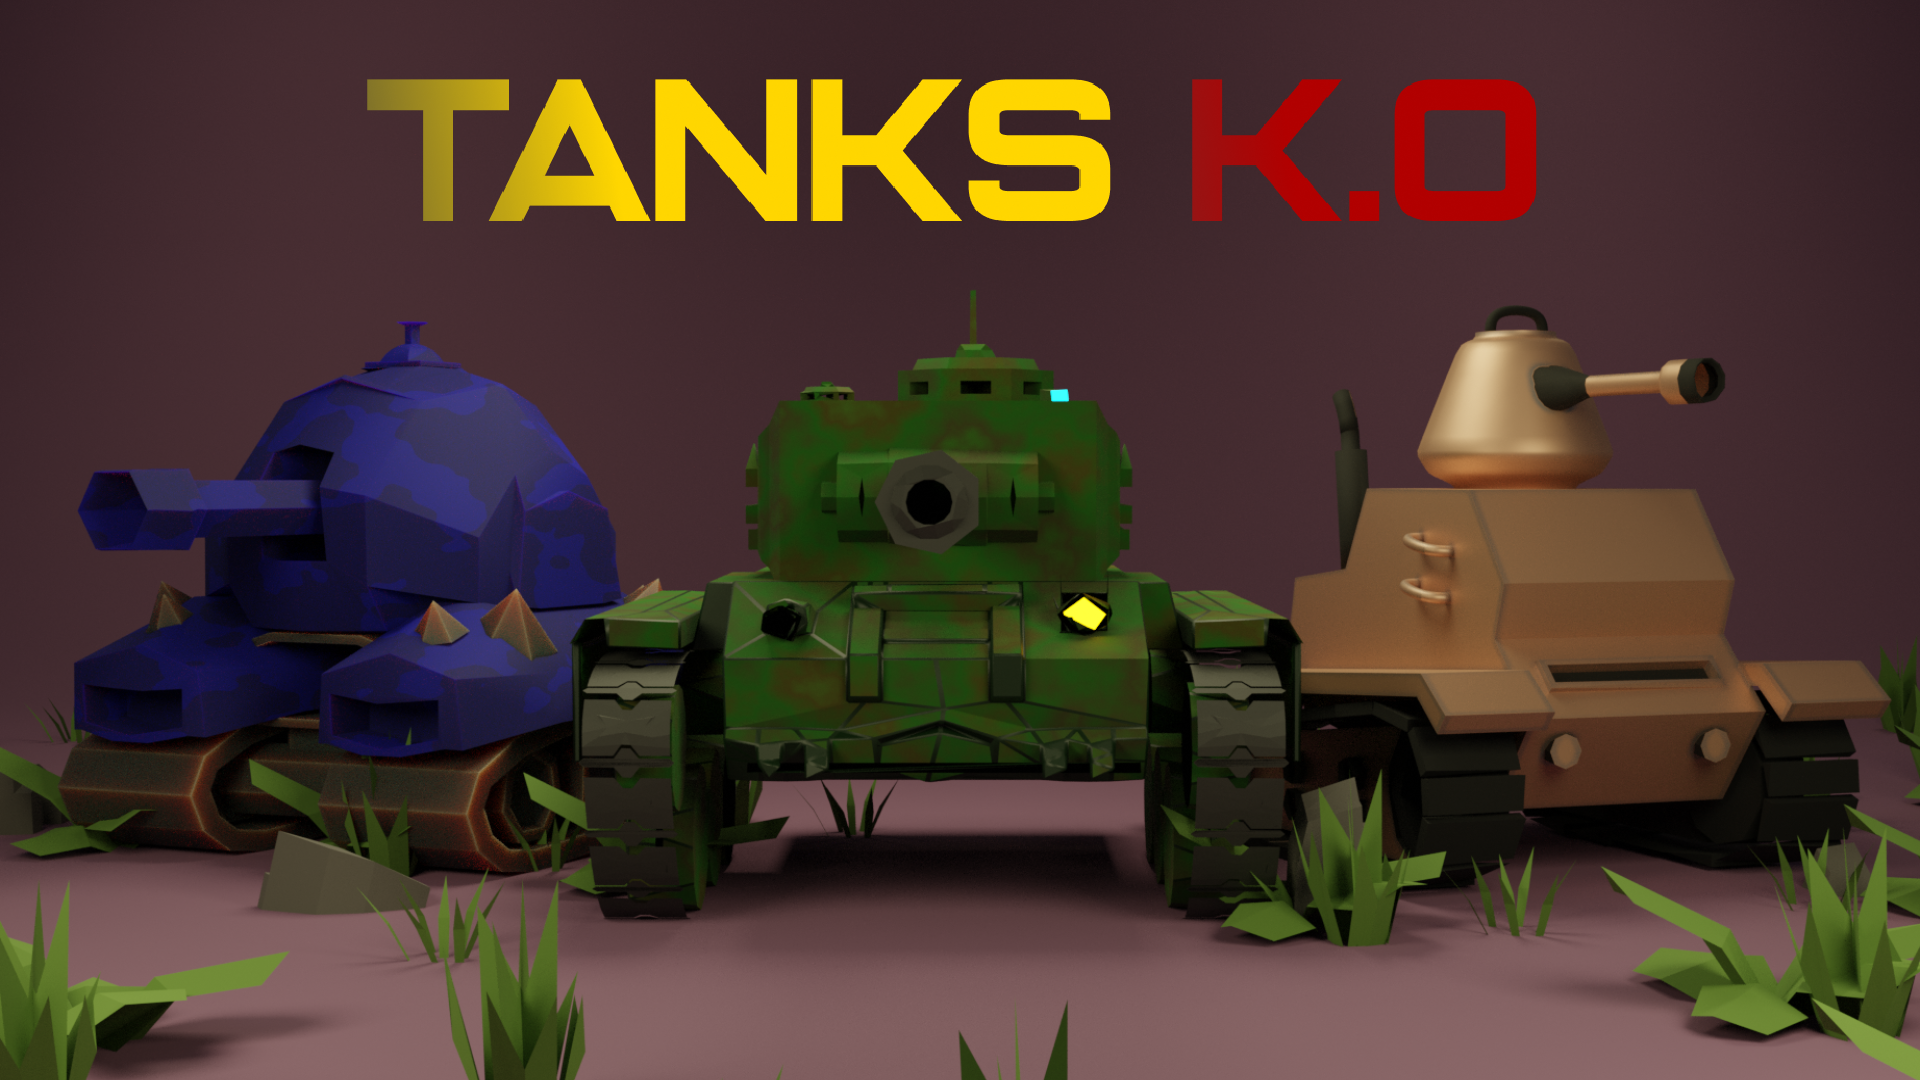 Tank's K.O